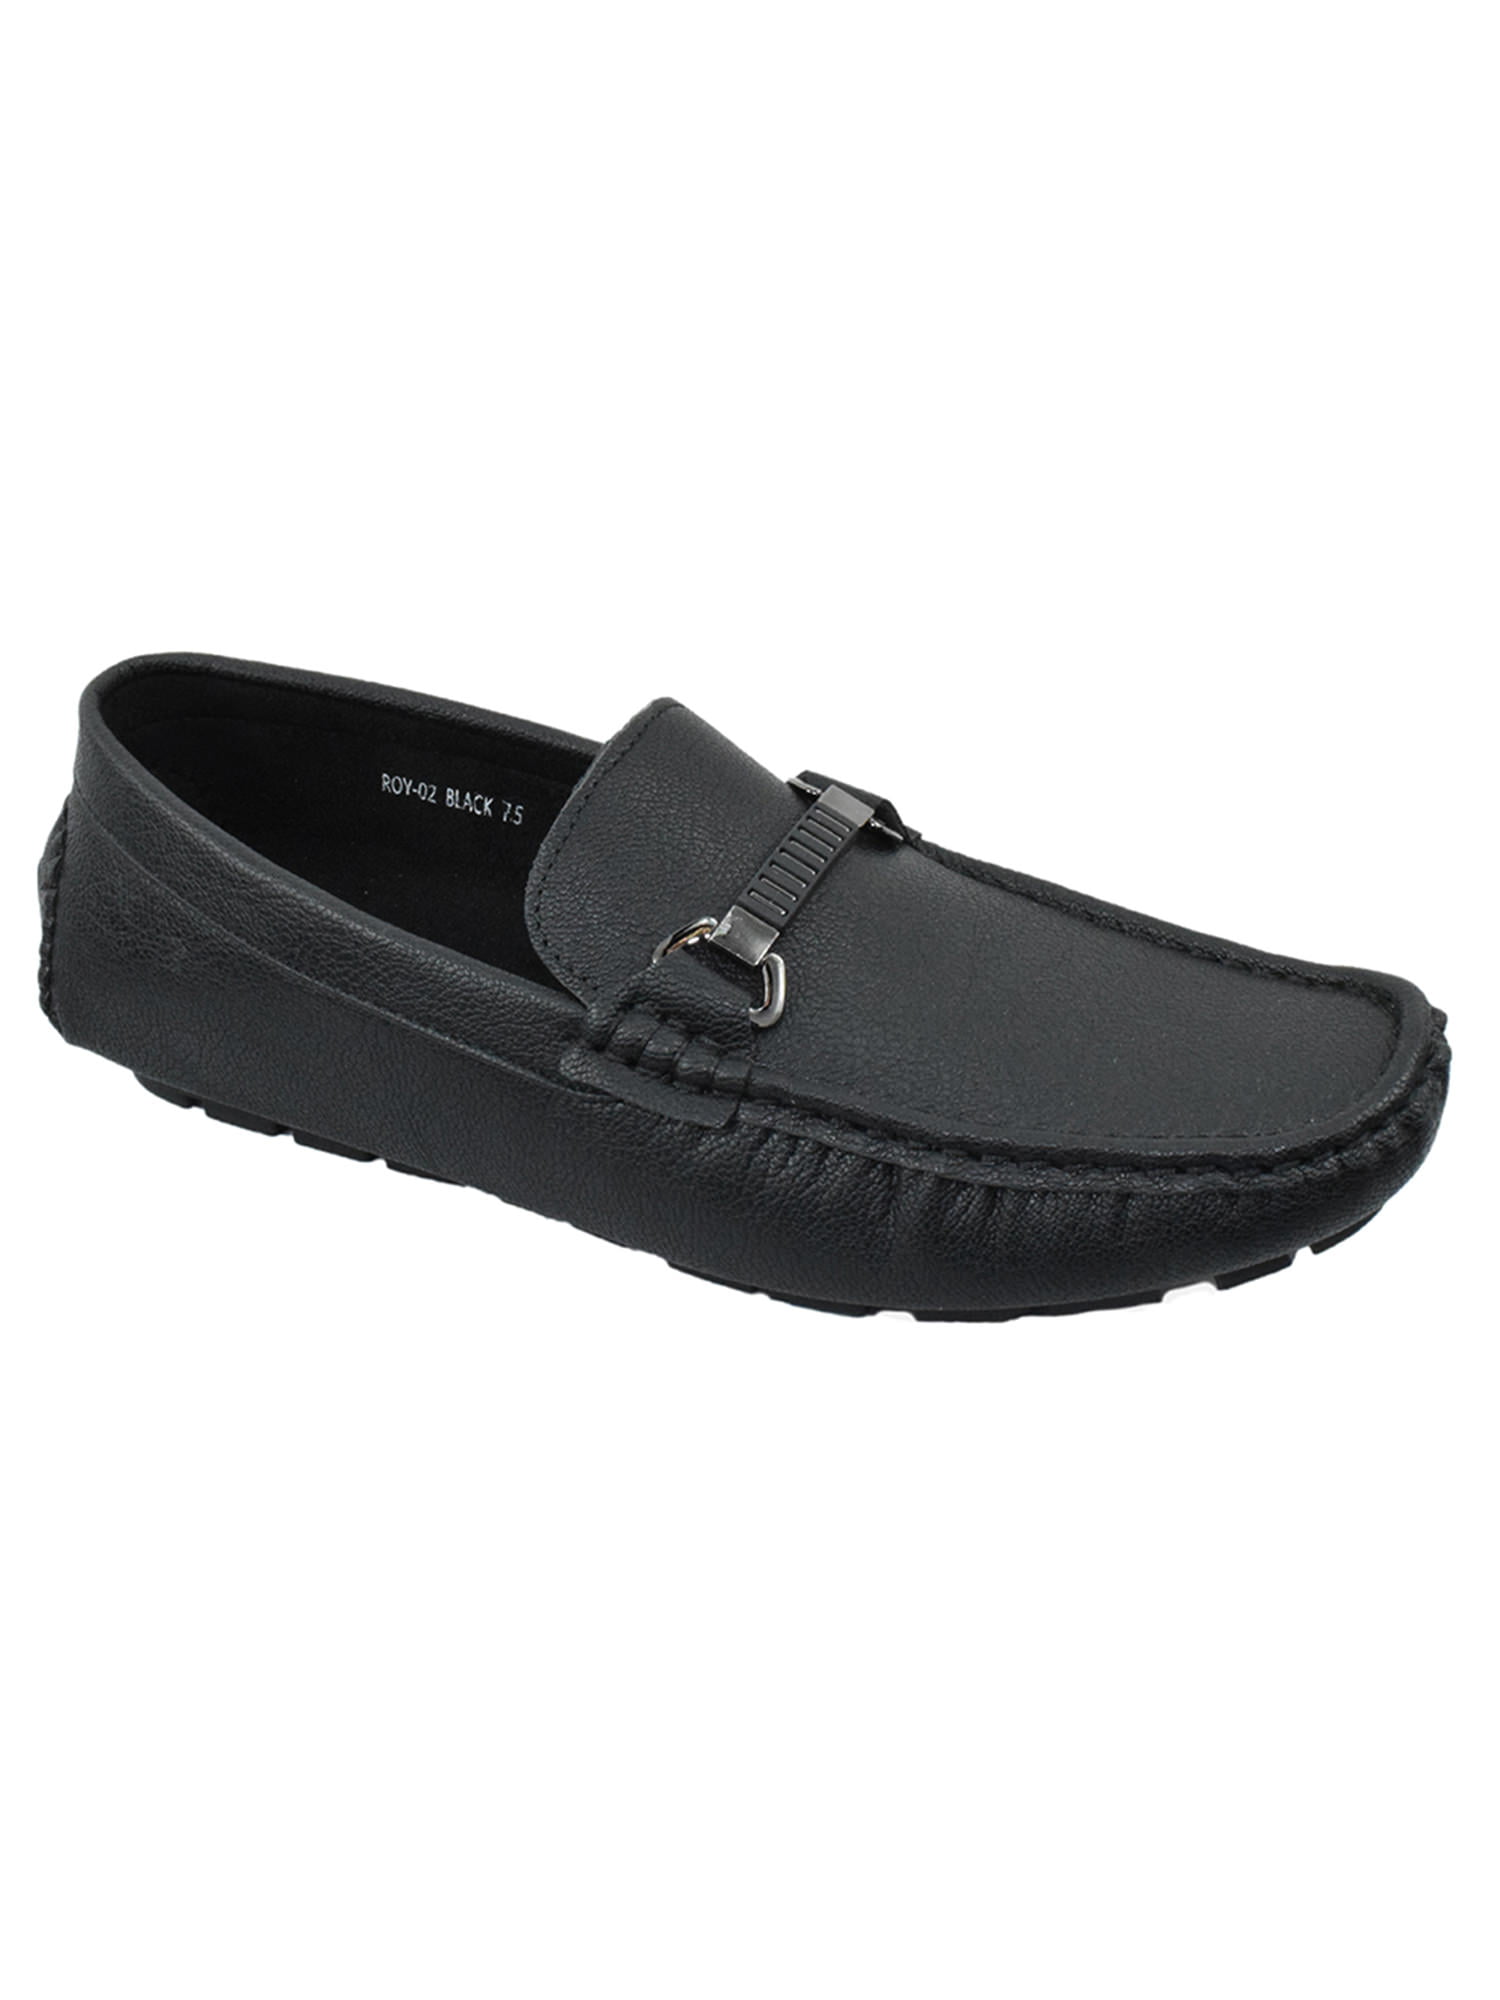 Mens Denali Leather Suede Loafer Slip On Hiking Shoe Black 29Z New!